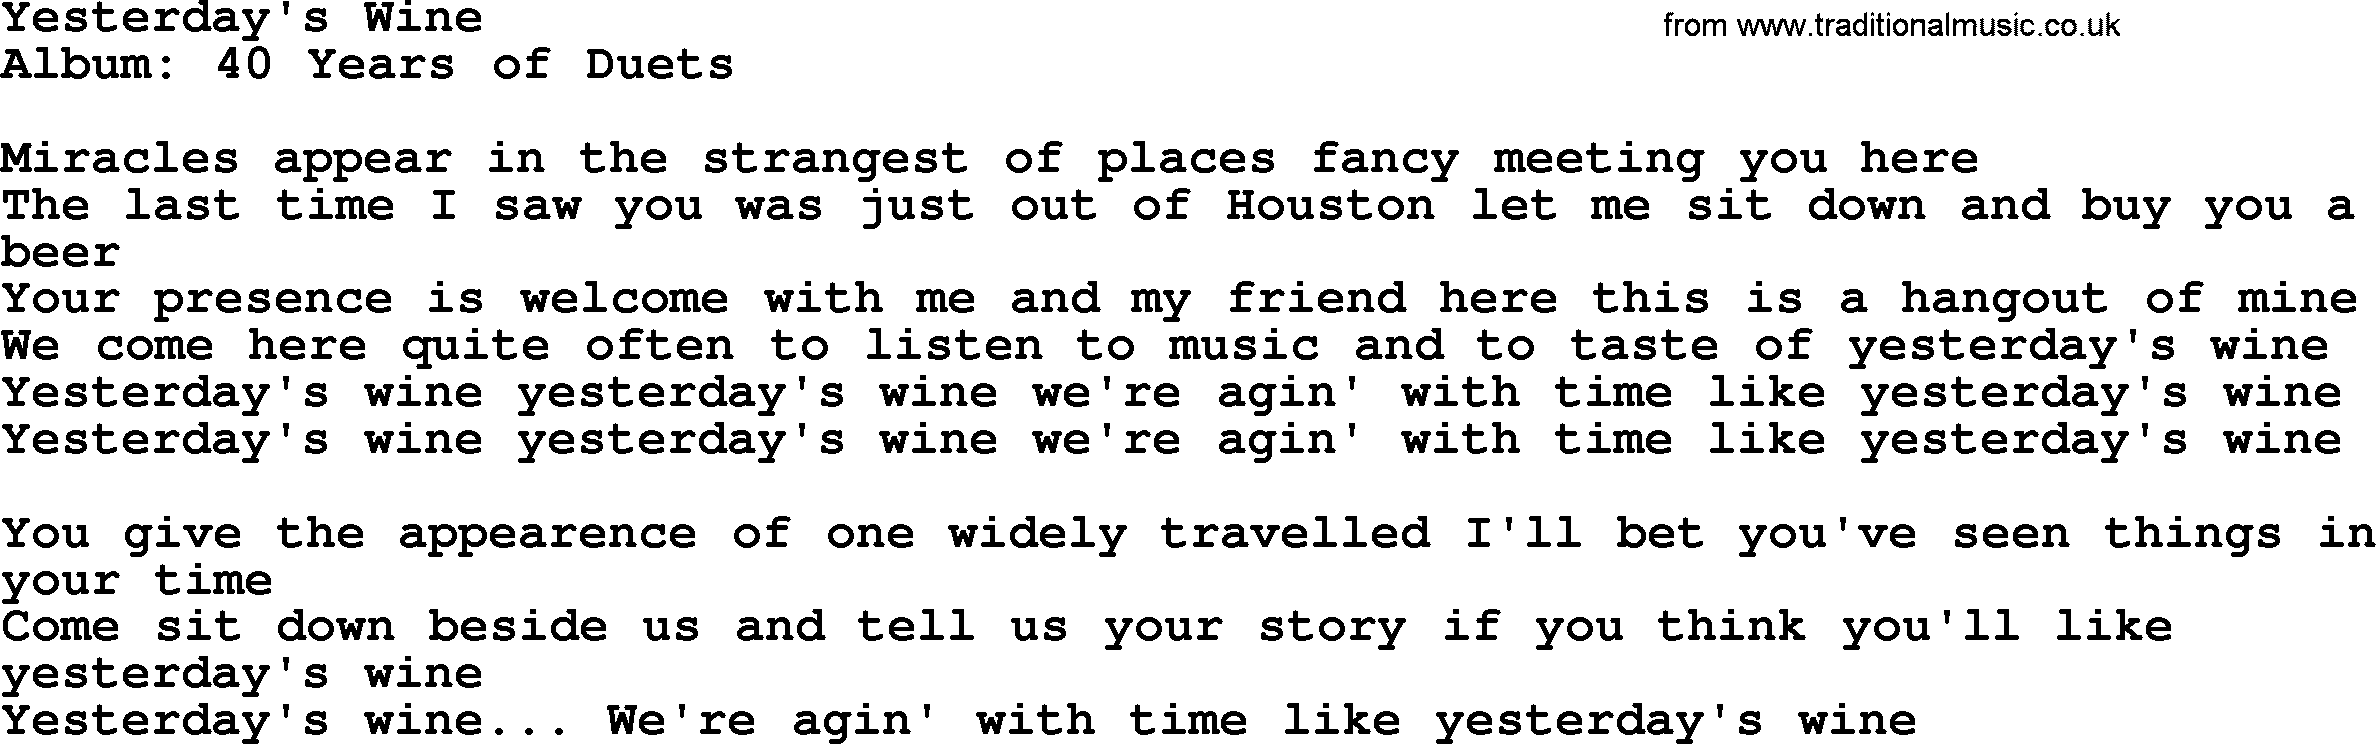 George Jones song: Yesterday's Wine, lyrics